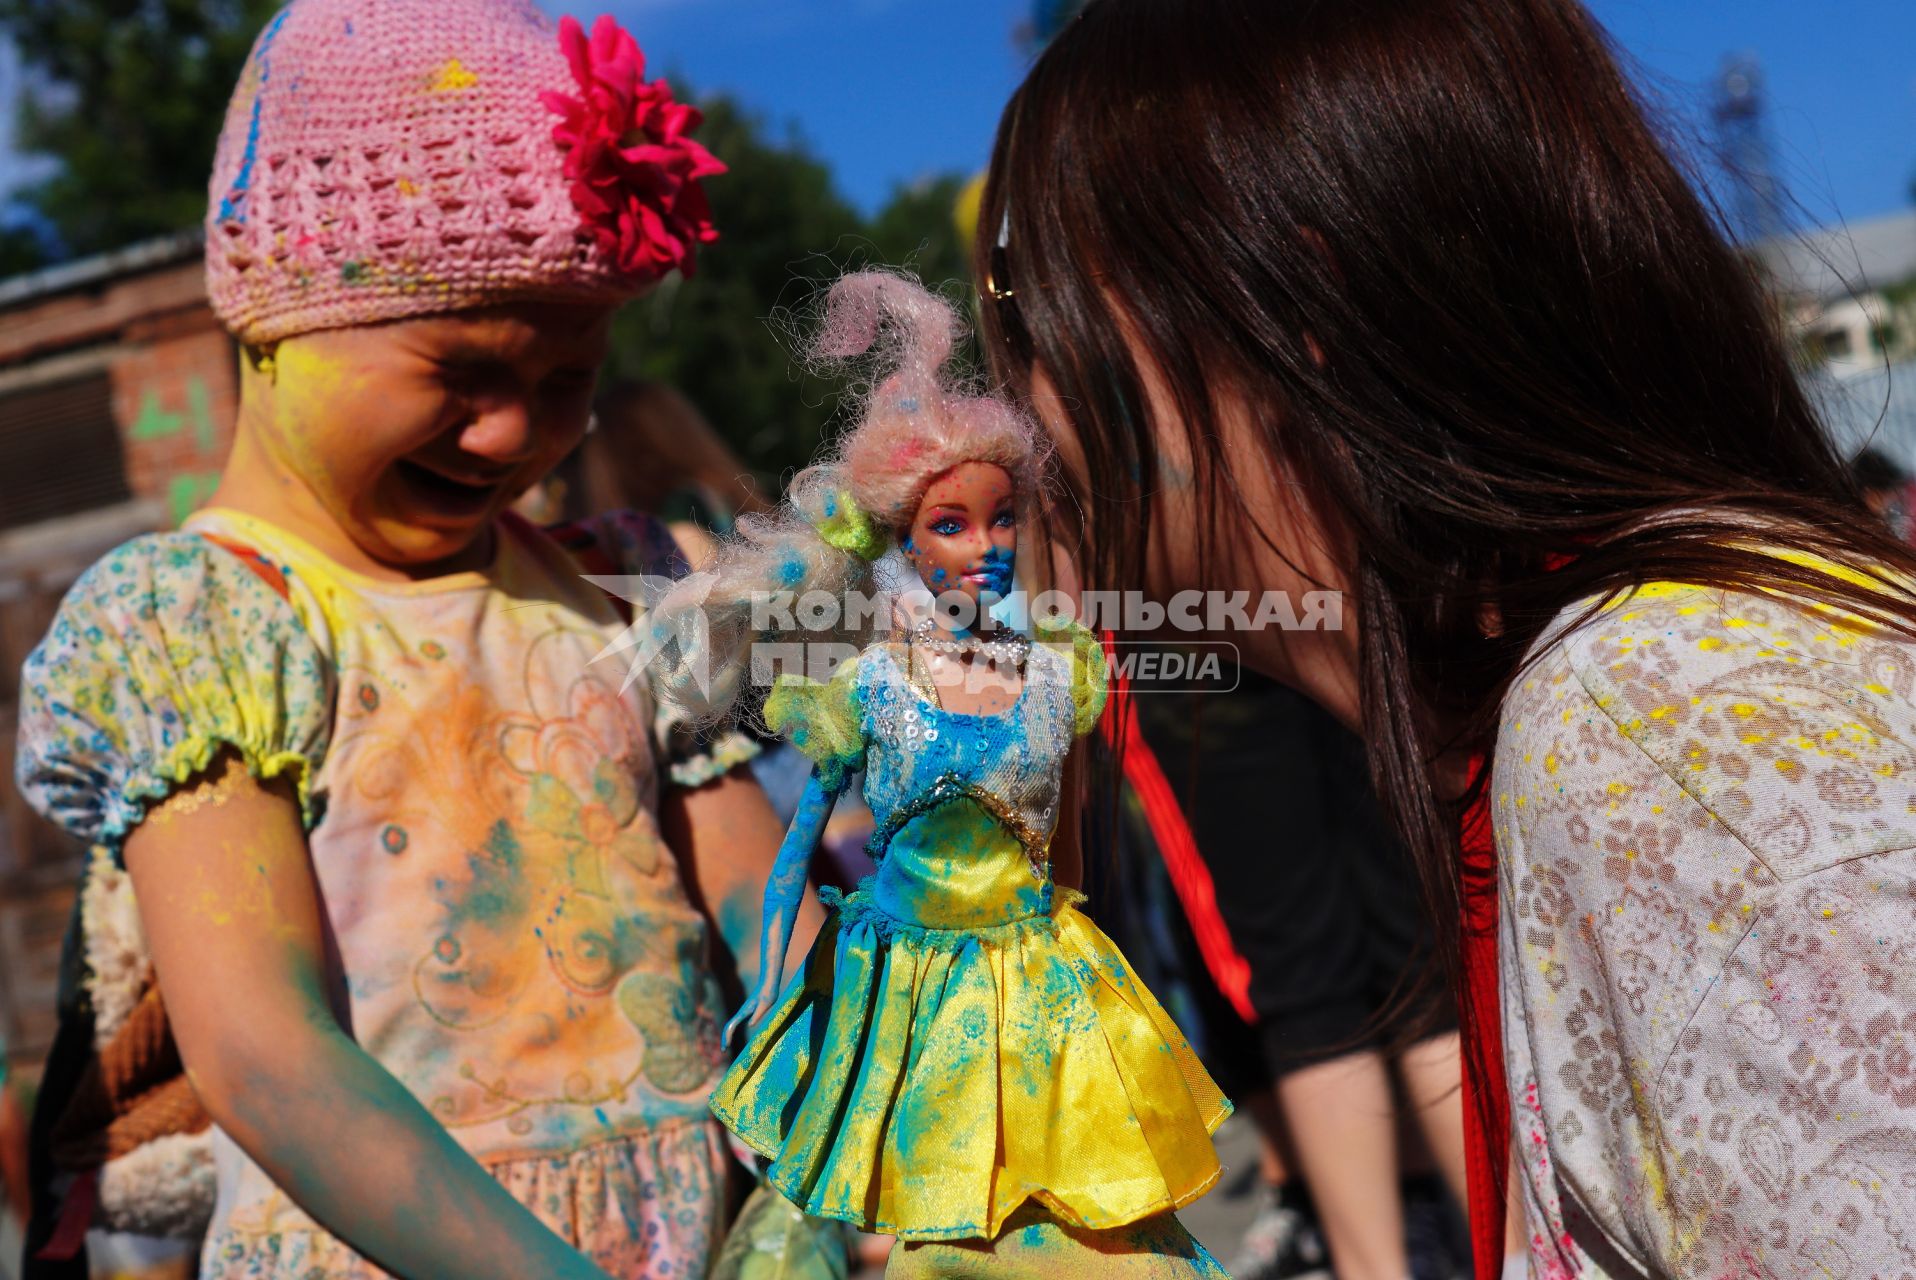 Екатеринбург. Маленькая девочка плачет из-за запачканой красками холи куклы Барби, во время фестиваля красок \"Холи фест\"